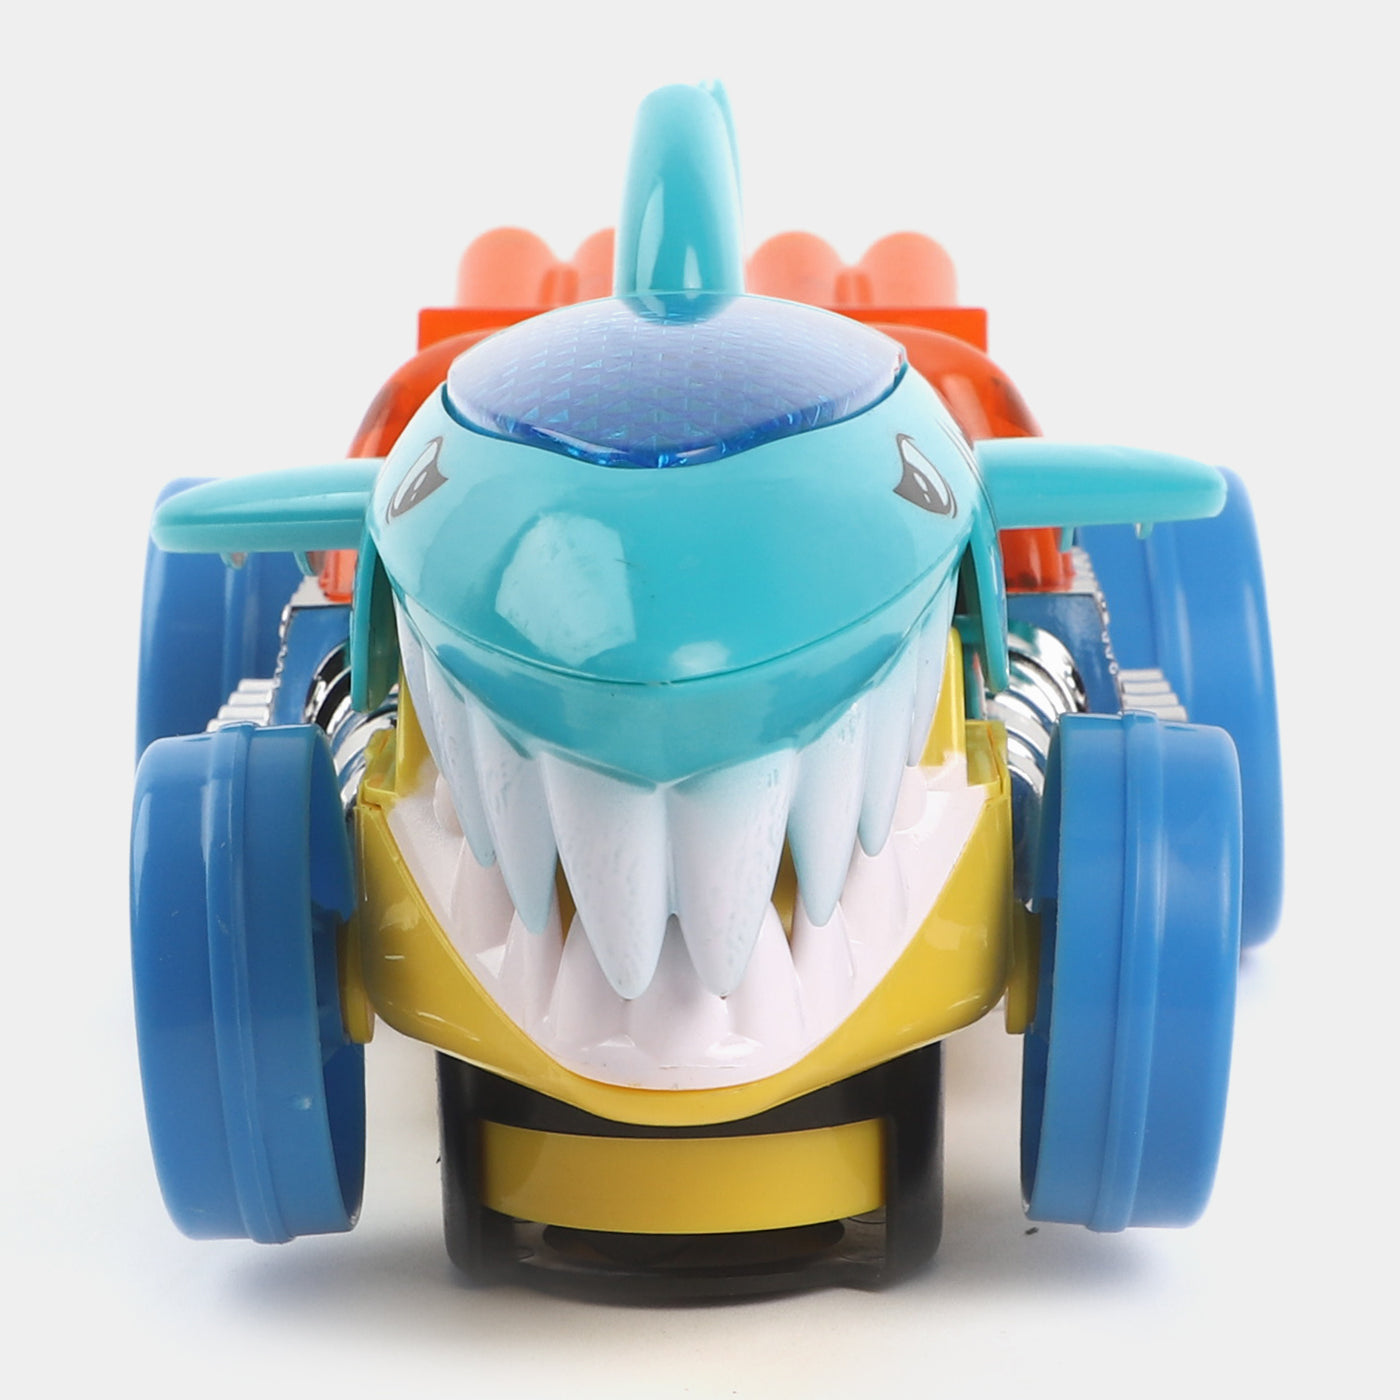 Shark W/Light & Music Toy For Kids